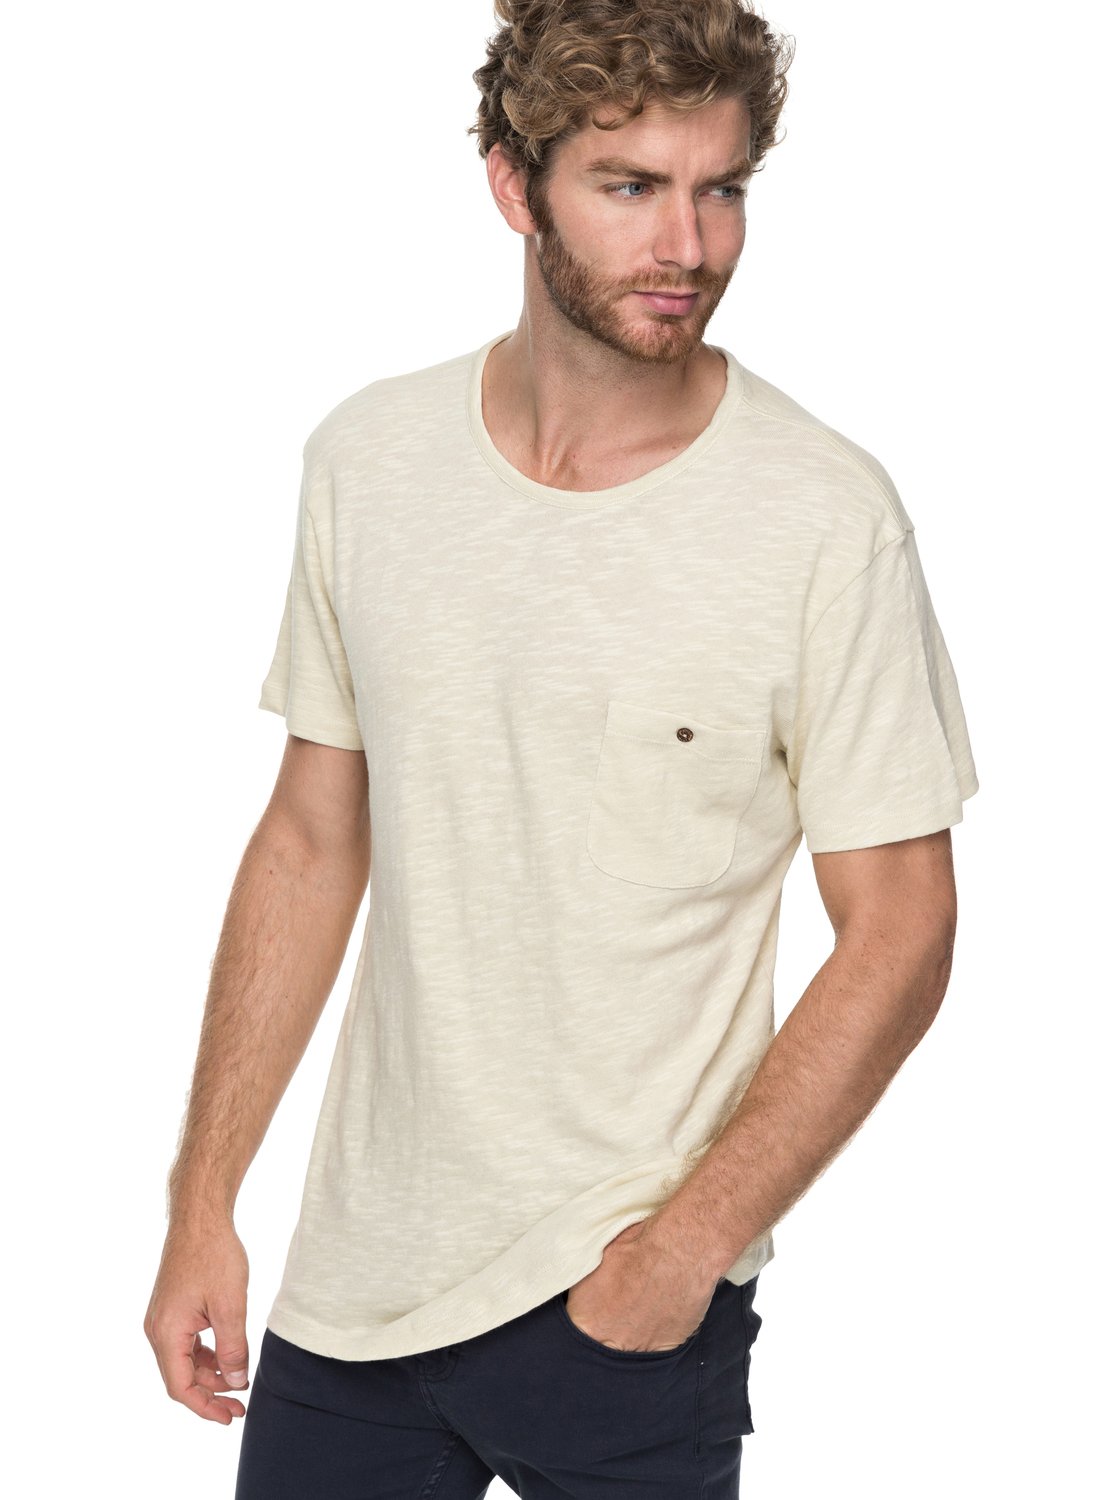 Low Tide - T shirt avec poche pour Homme - Quiksilver